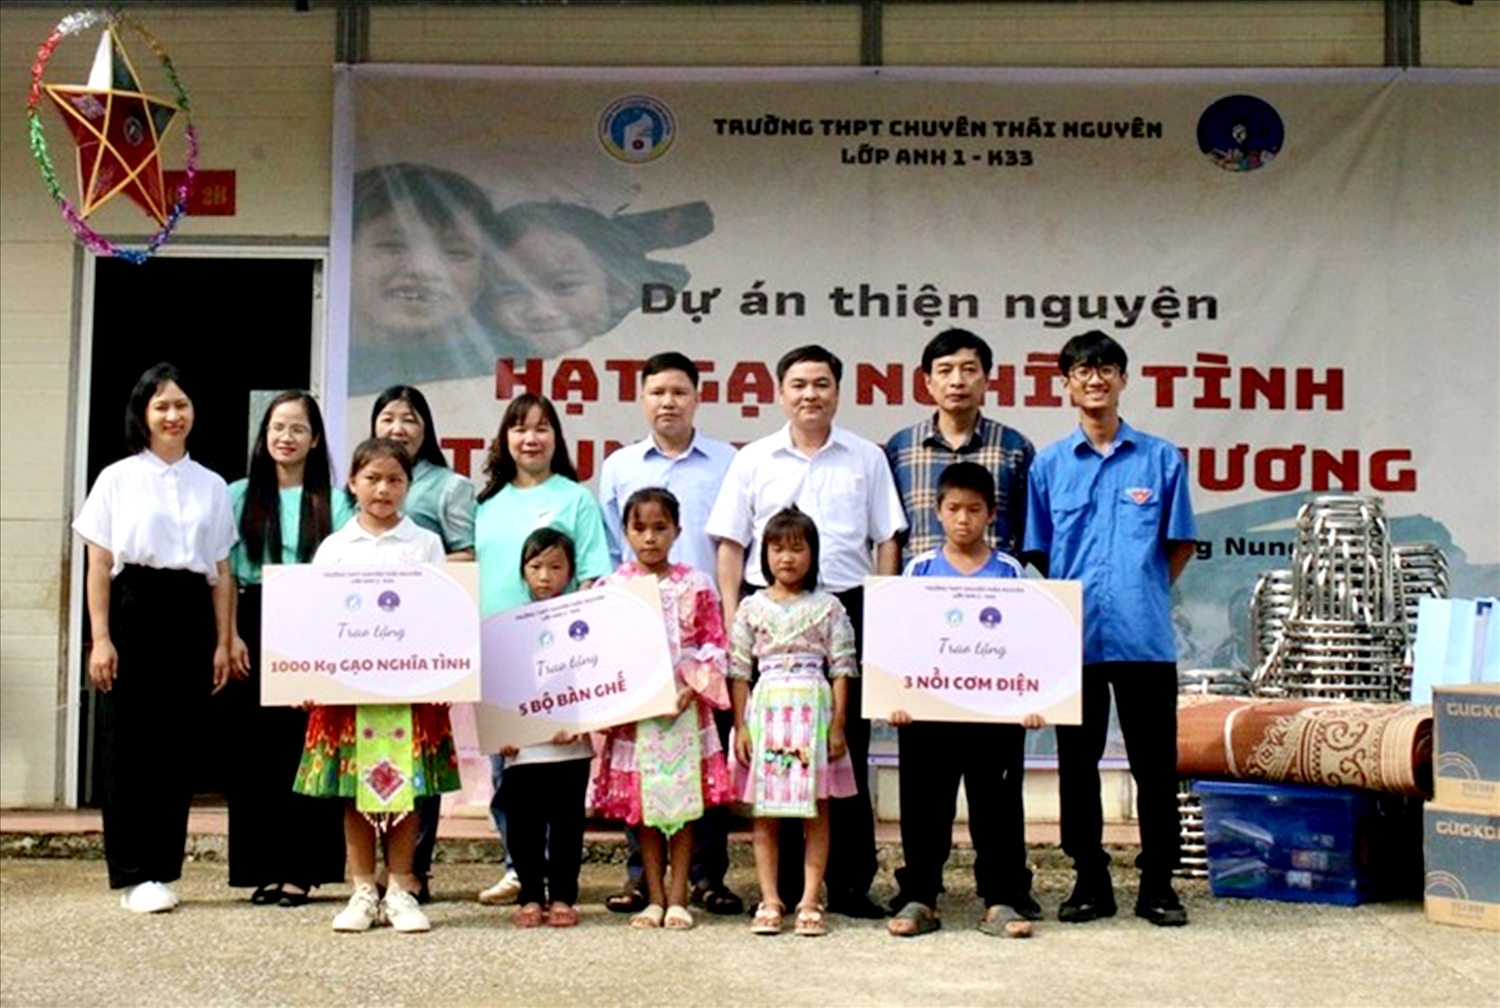 Trường THPT Chuyên Thái Nguyên mang Trung thu đến với học sinh vùng cao.